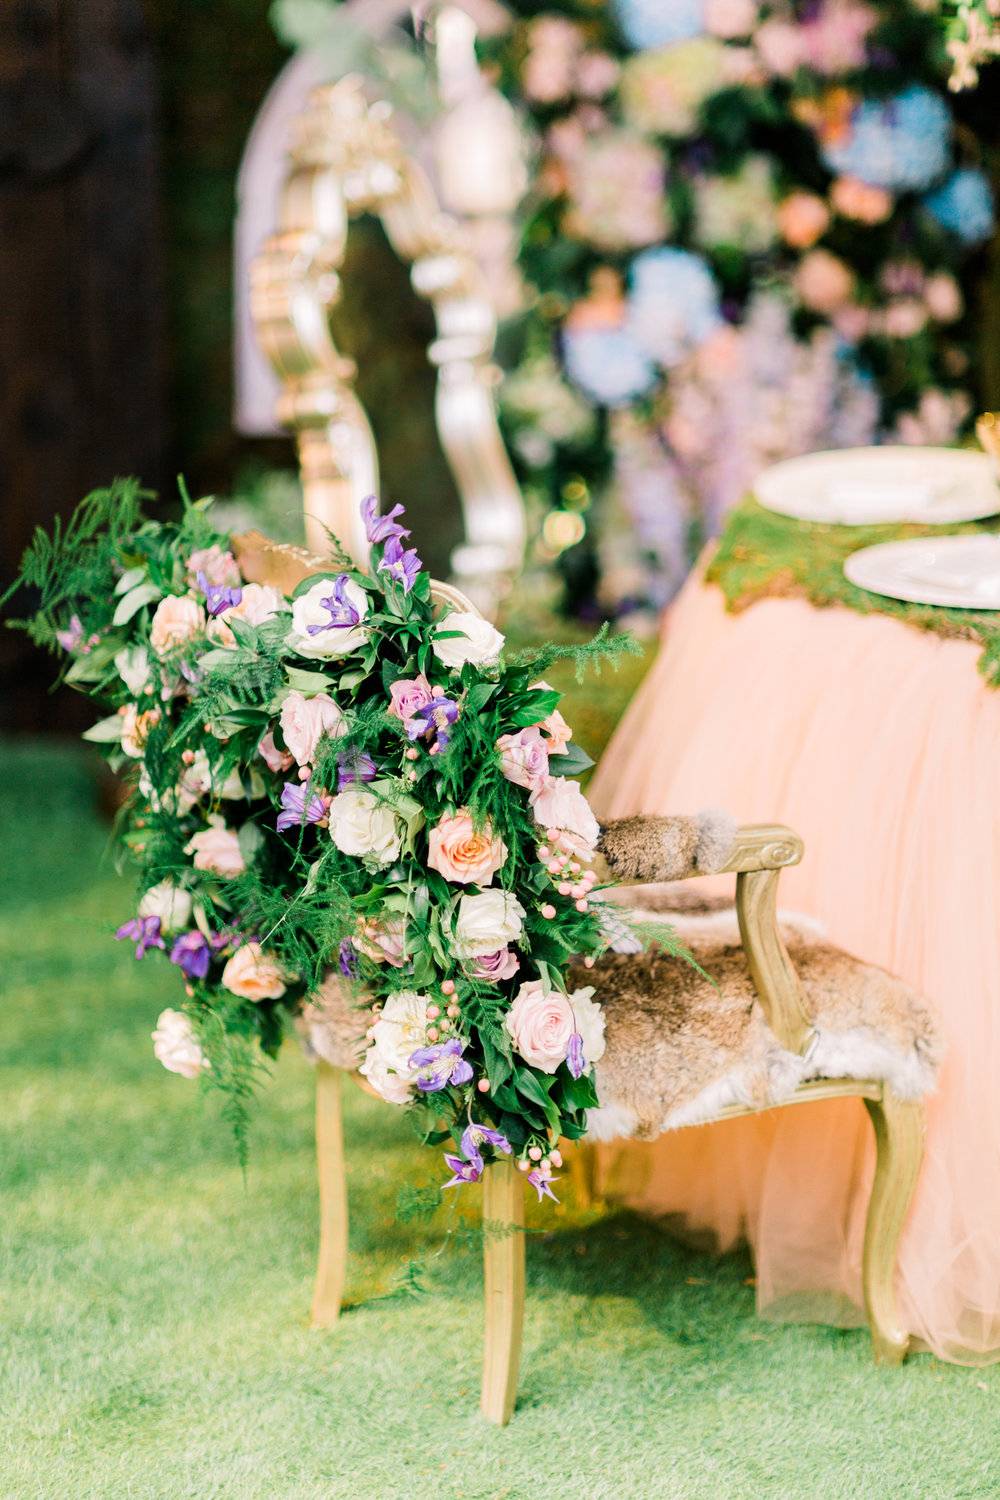 Sweetheart Table Enchanted Garden Themed Wedding Sweetheart Table